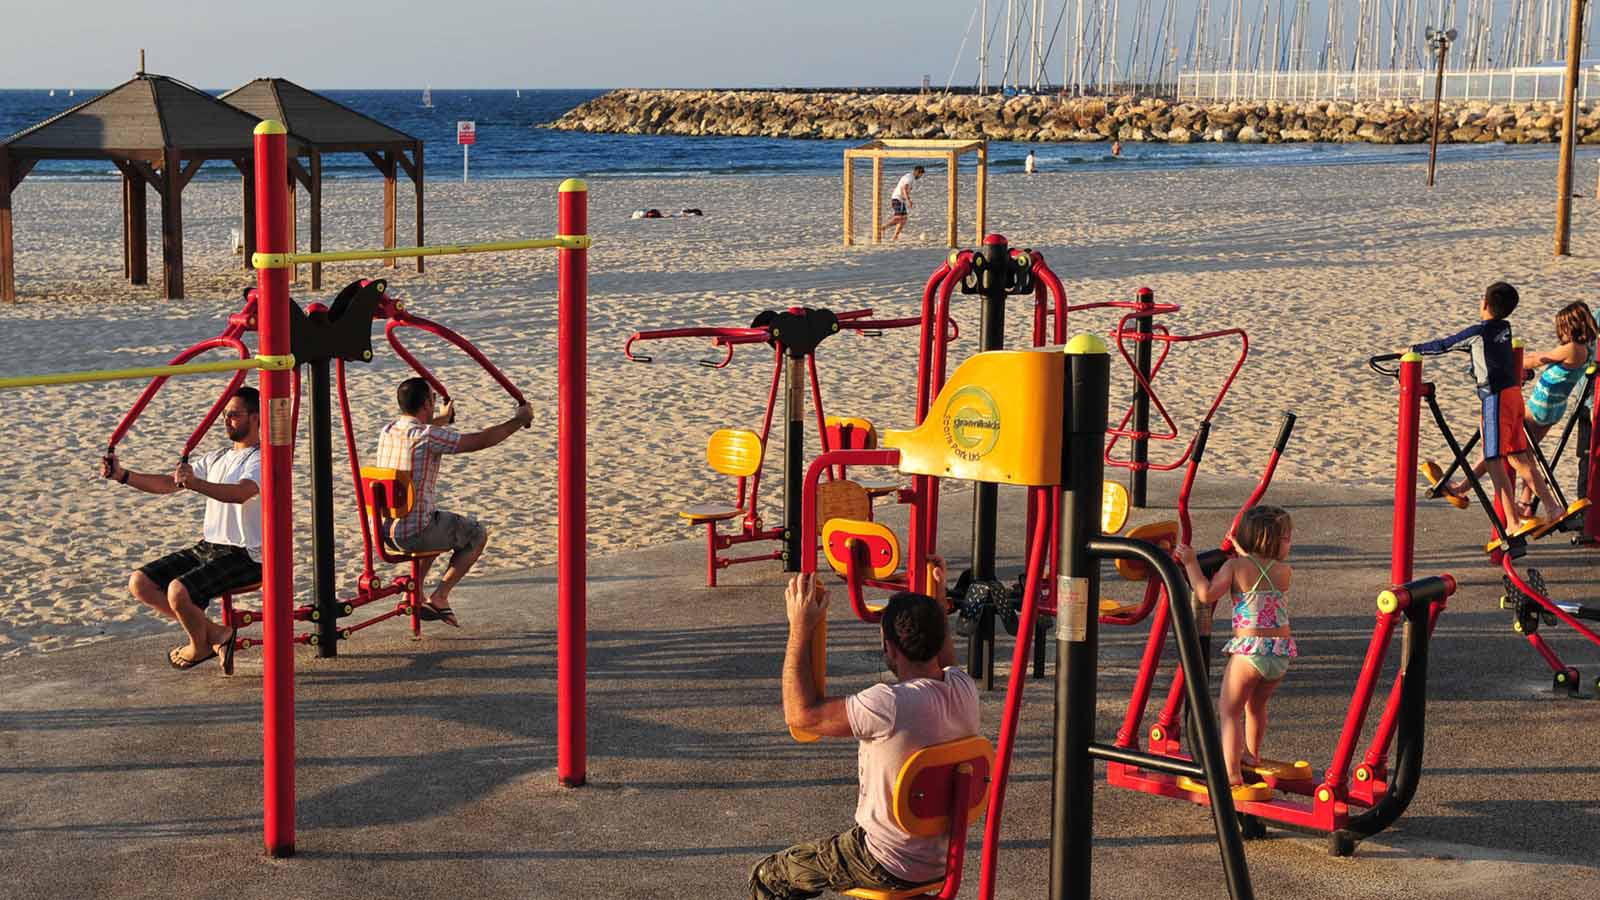 מתקני כושר ציבוריים בחוף בתל אביב. ״הפרט צריך למצוא זמן להשקיט את עצמו, לבלות זמן עם המשפחה, לדאוג לגייס כוחות״ (ChameleonsEye / Shutterstock.com)